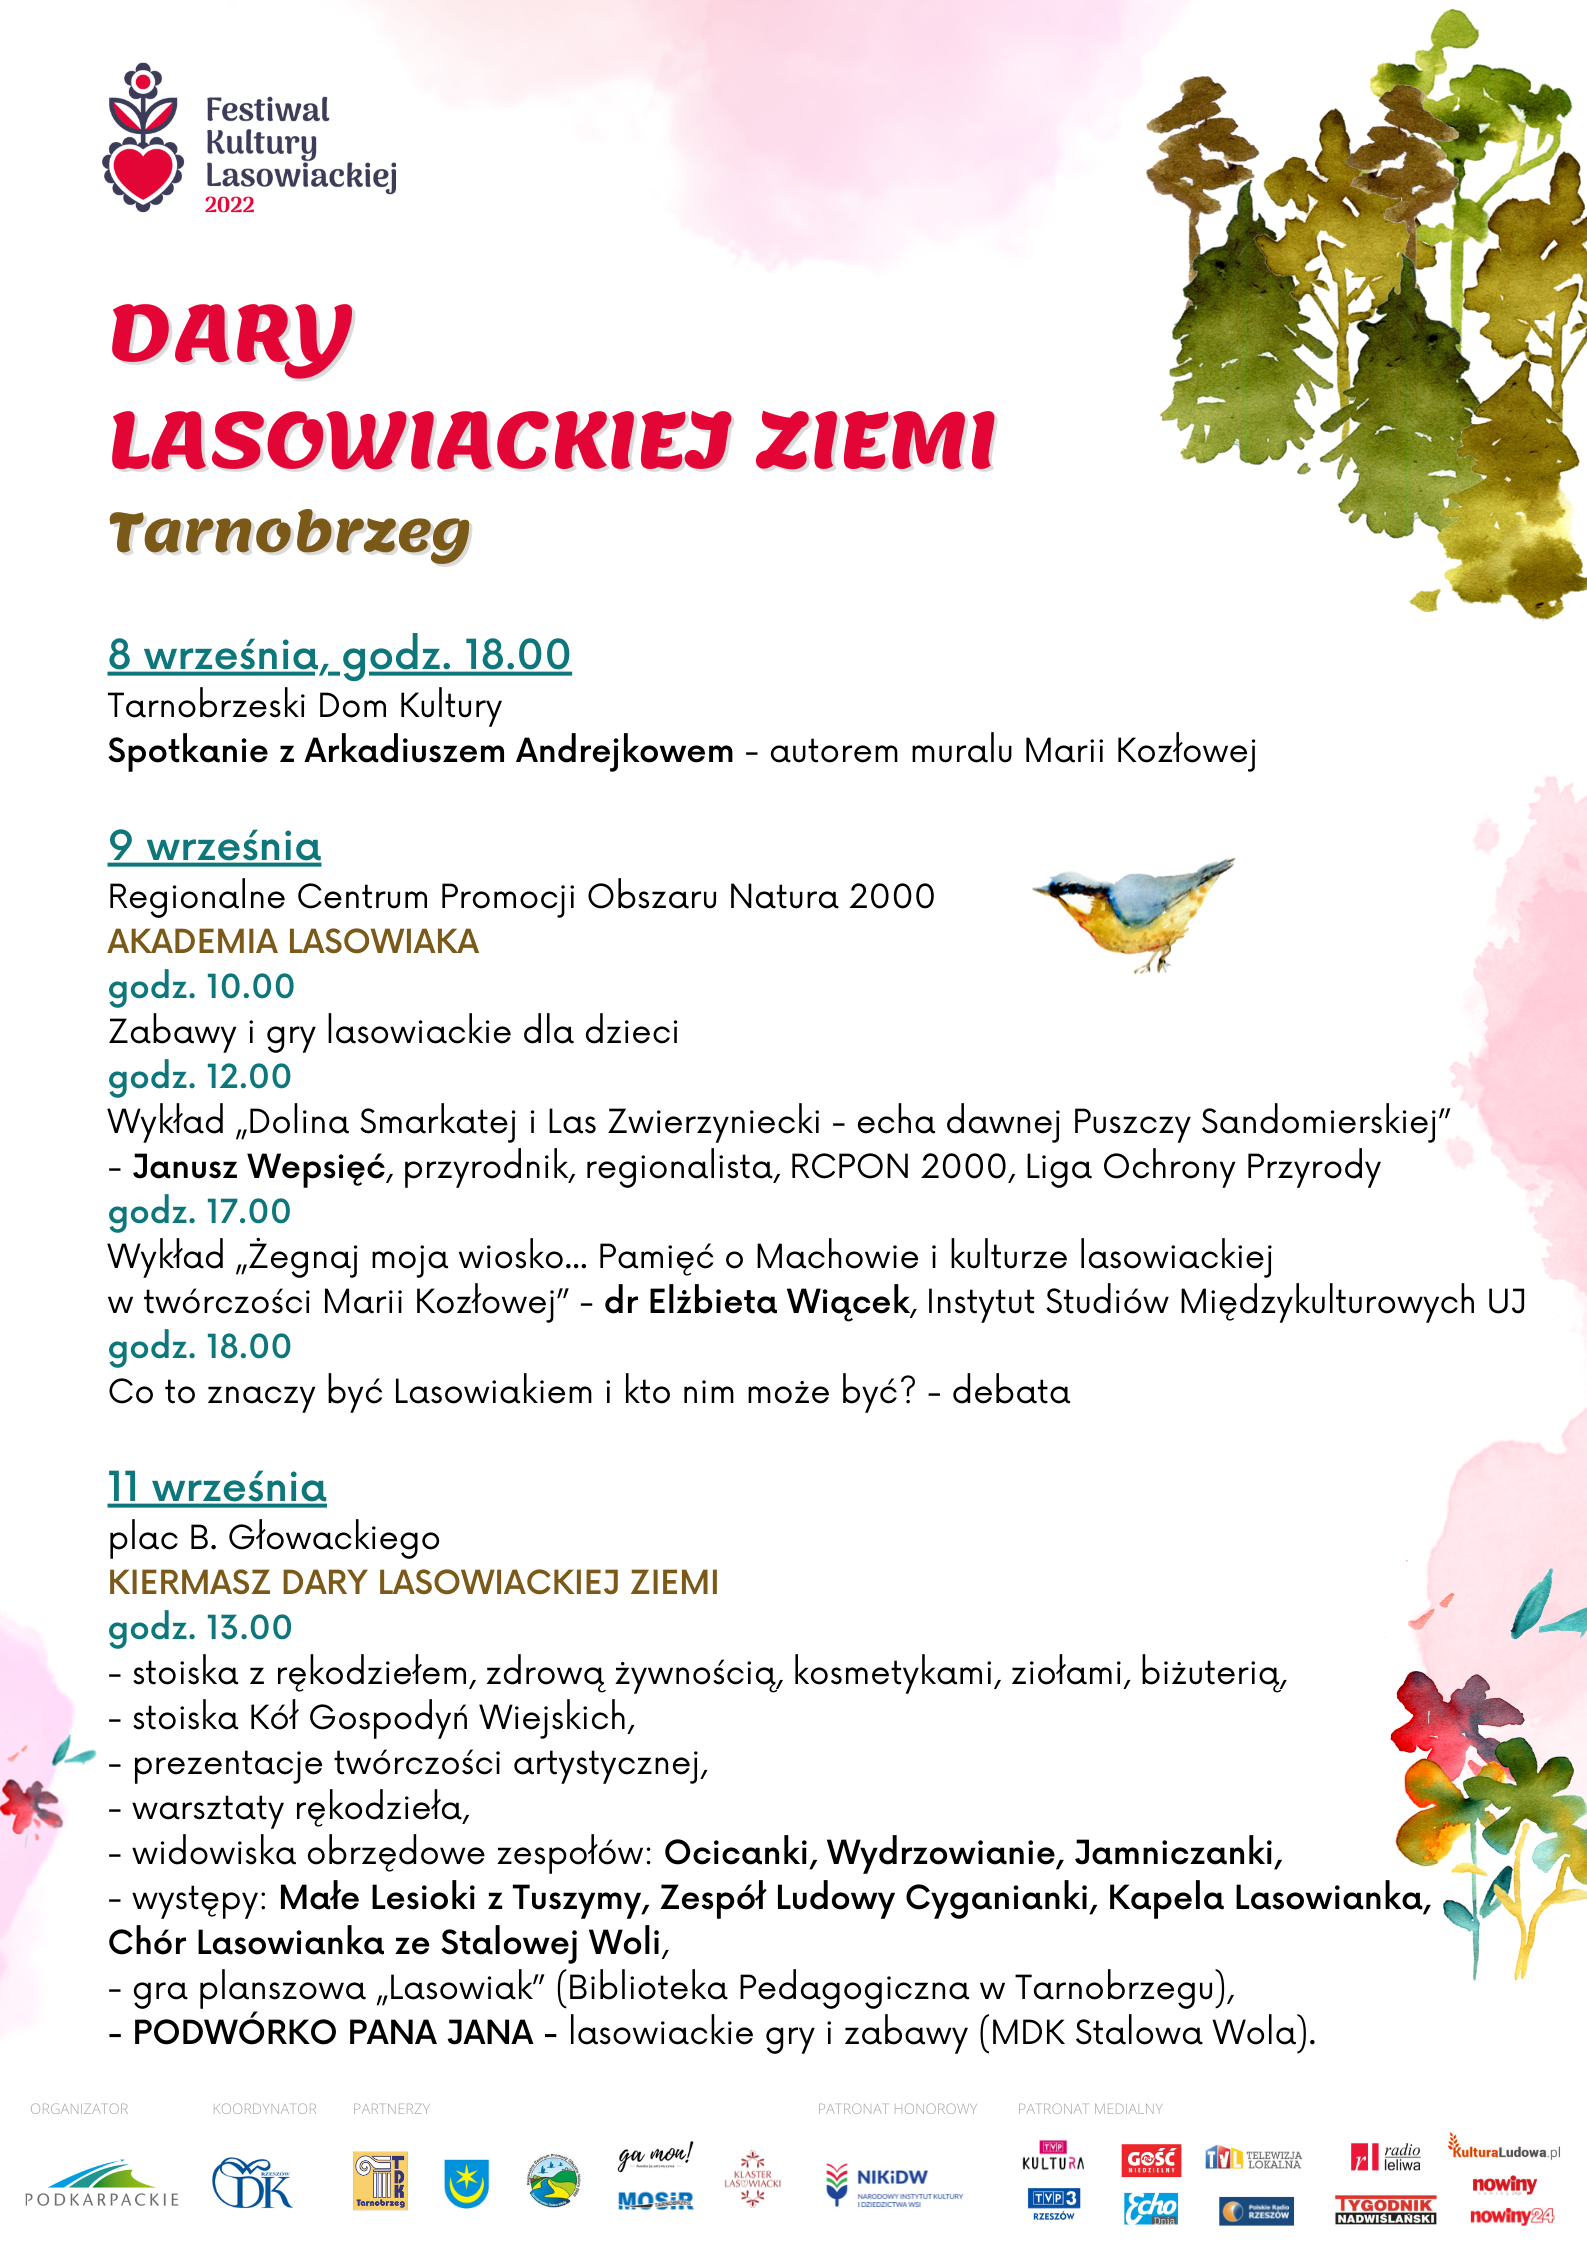 Festiwal Kultury Lasowiackiej w Tarnobrzegu. Zapraszamy.